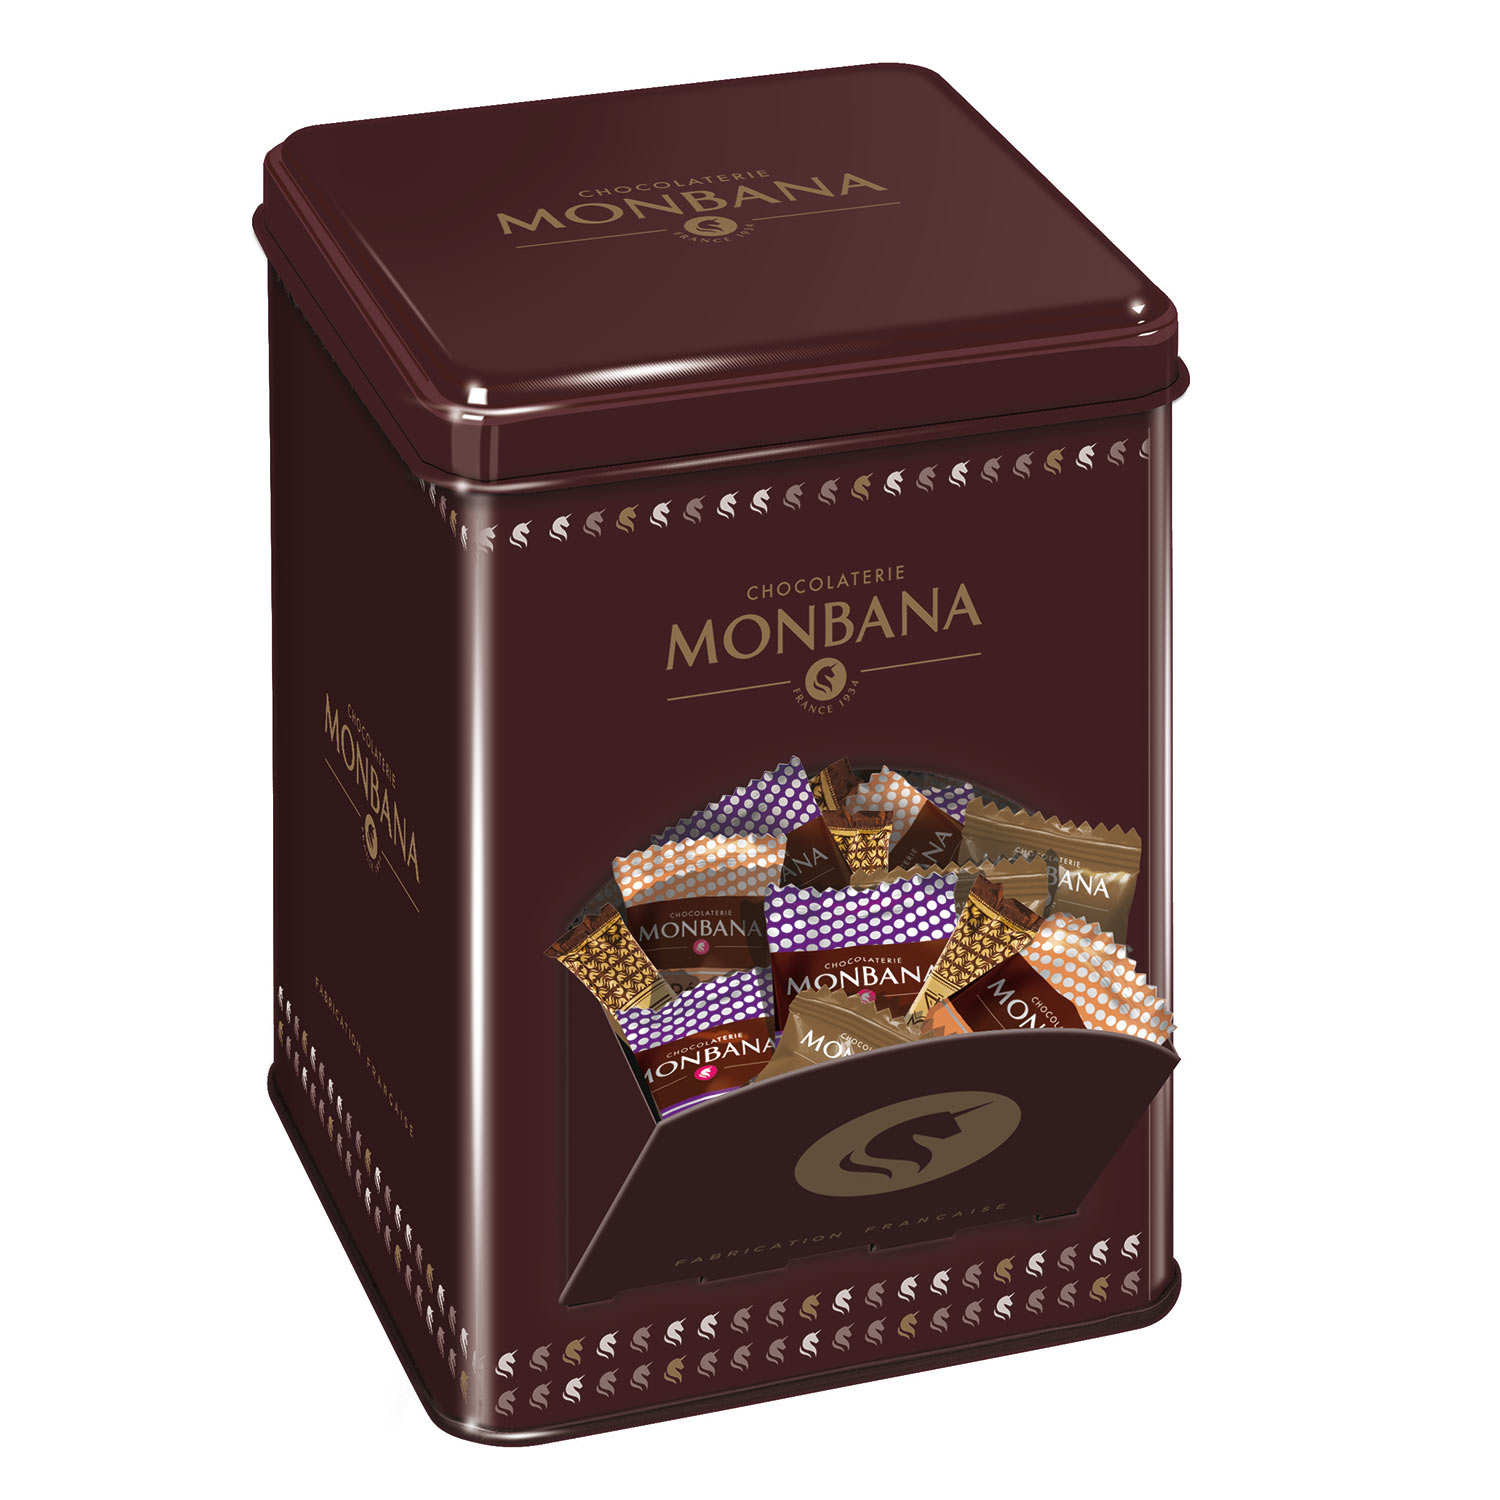 https://produits.bienmanger.com/37696-0w0h0_Maxibox_Collector_Monbana_Chocolat_Box.jpg